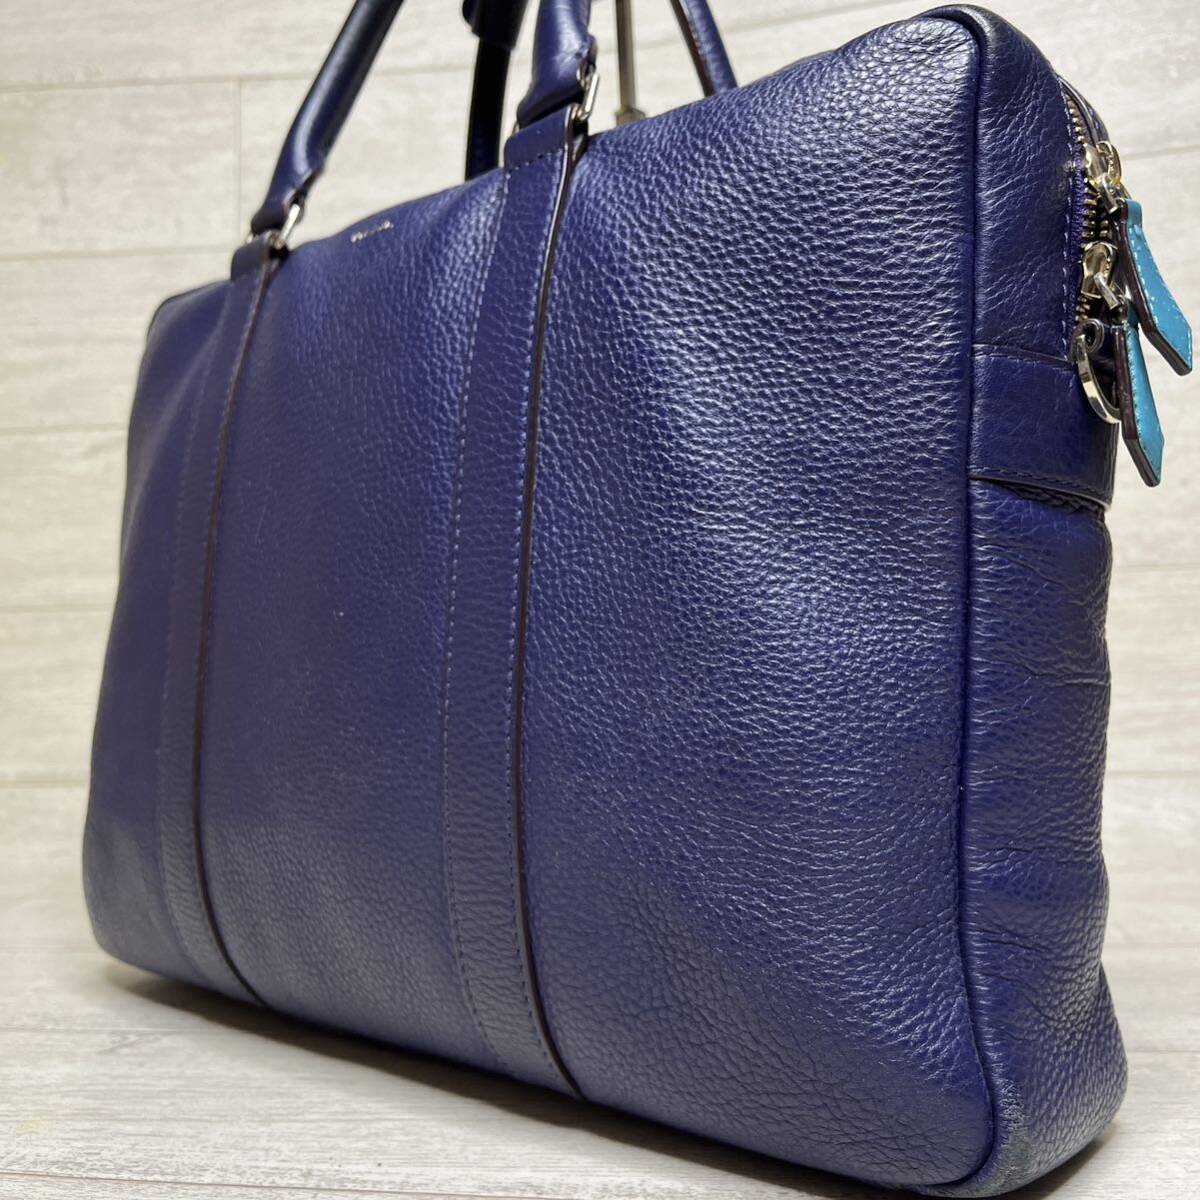 1 иен [ трудно найти ] Paul Smith PaulSmith портфель портфель большая сумка 2WAY голубой кожа мужской женский синий 